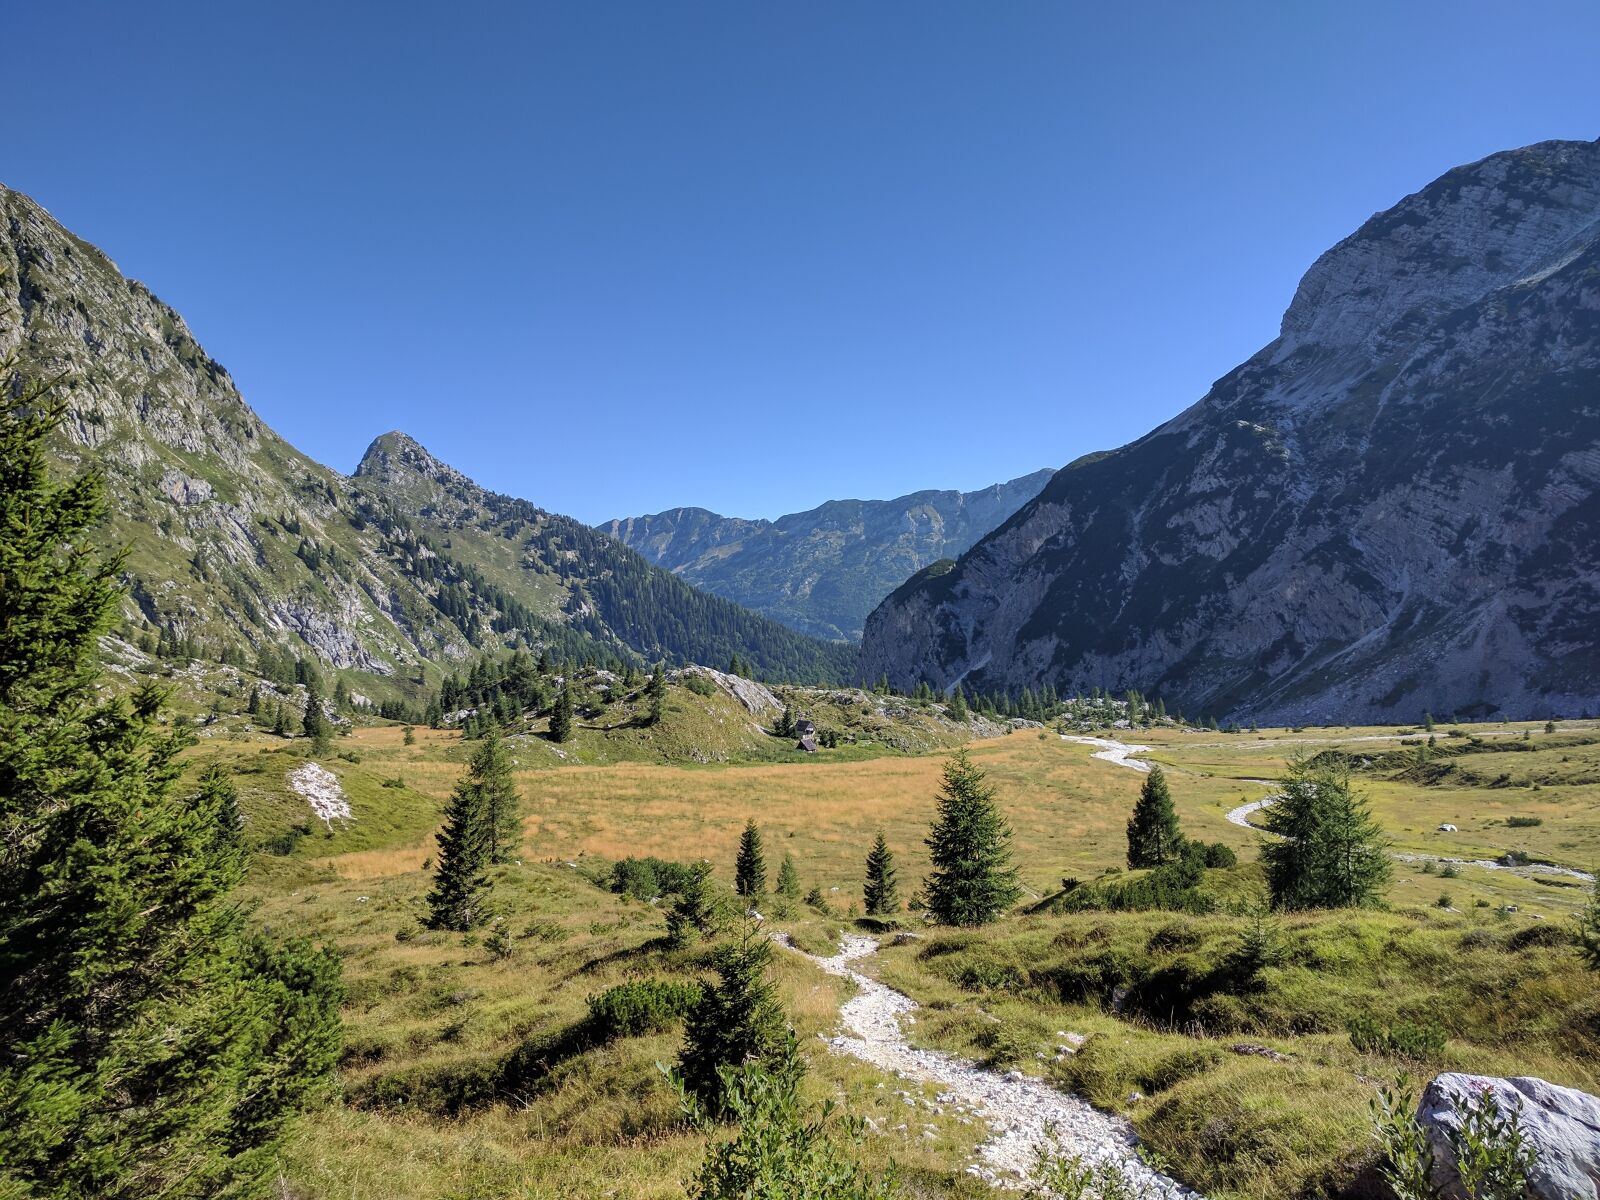 Google Nexus 6P sample photo. Mountain, mountains, mountain forest photography